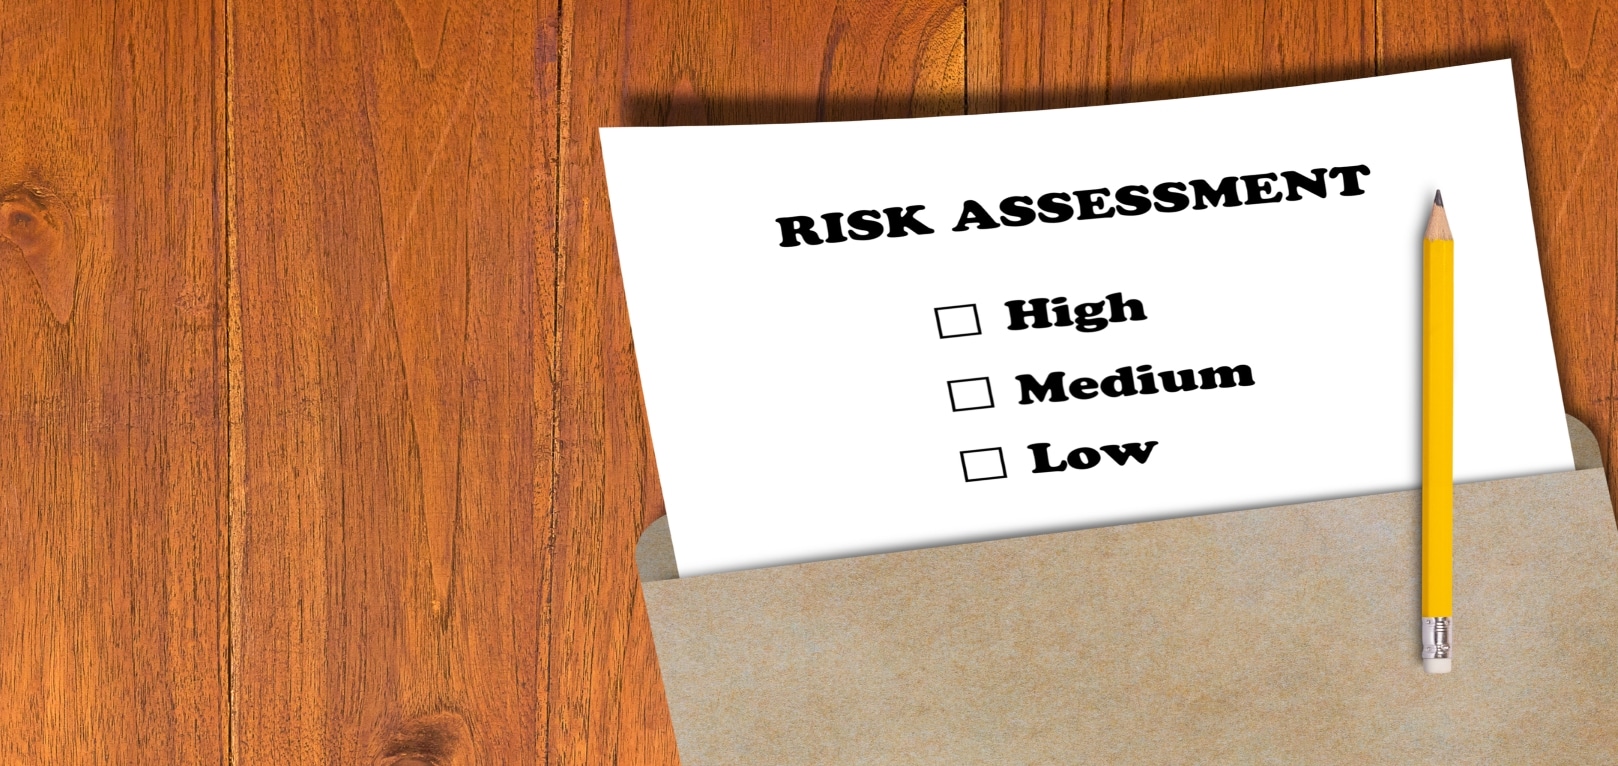 Risk assessment on brown envelope